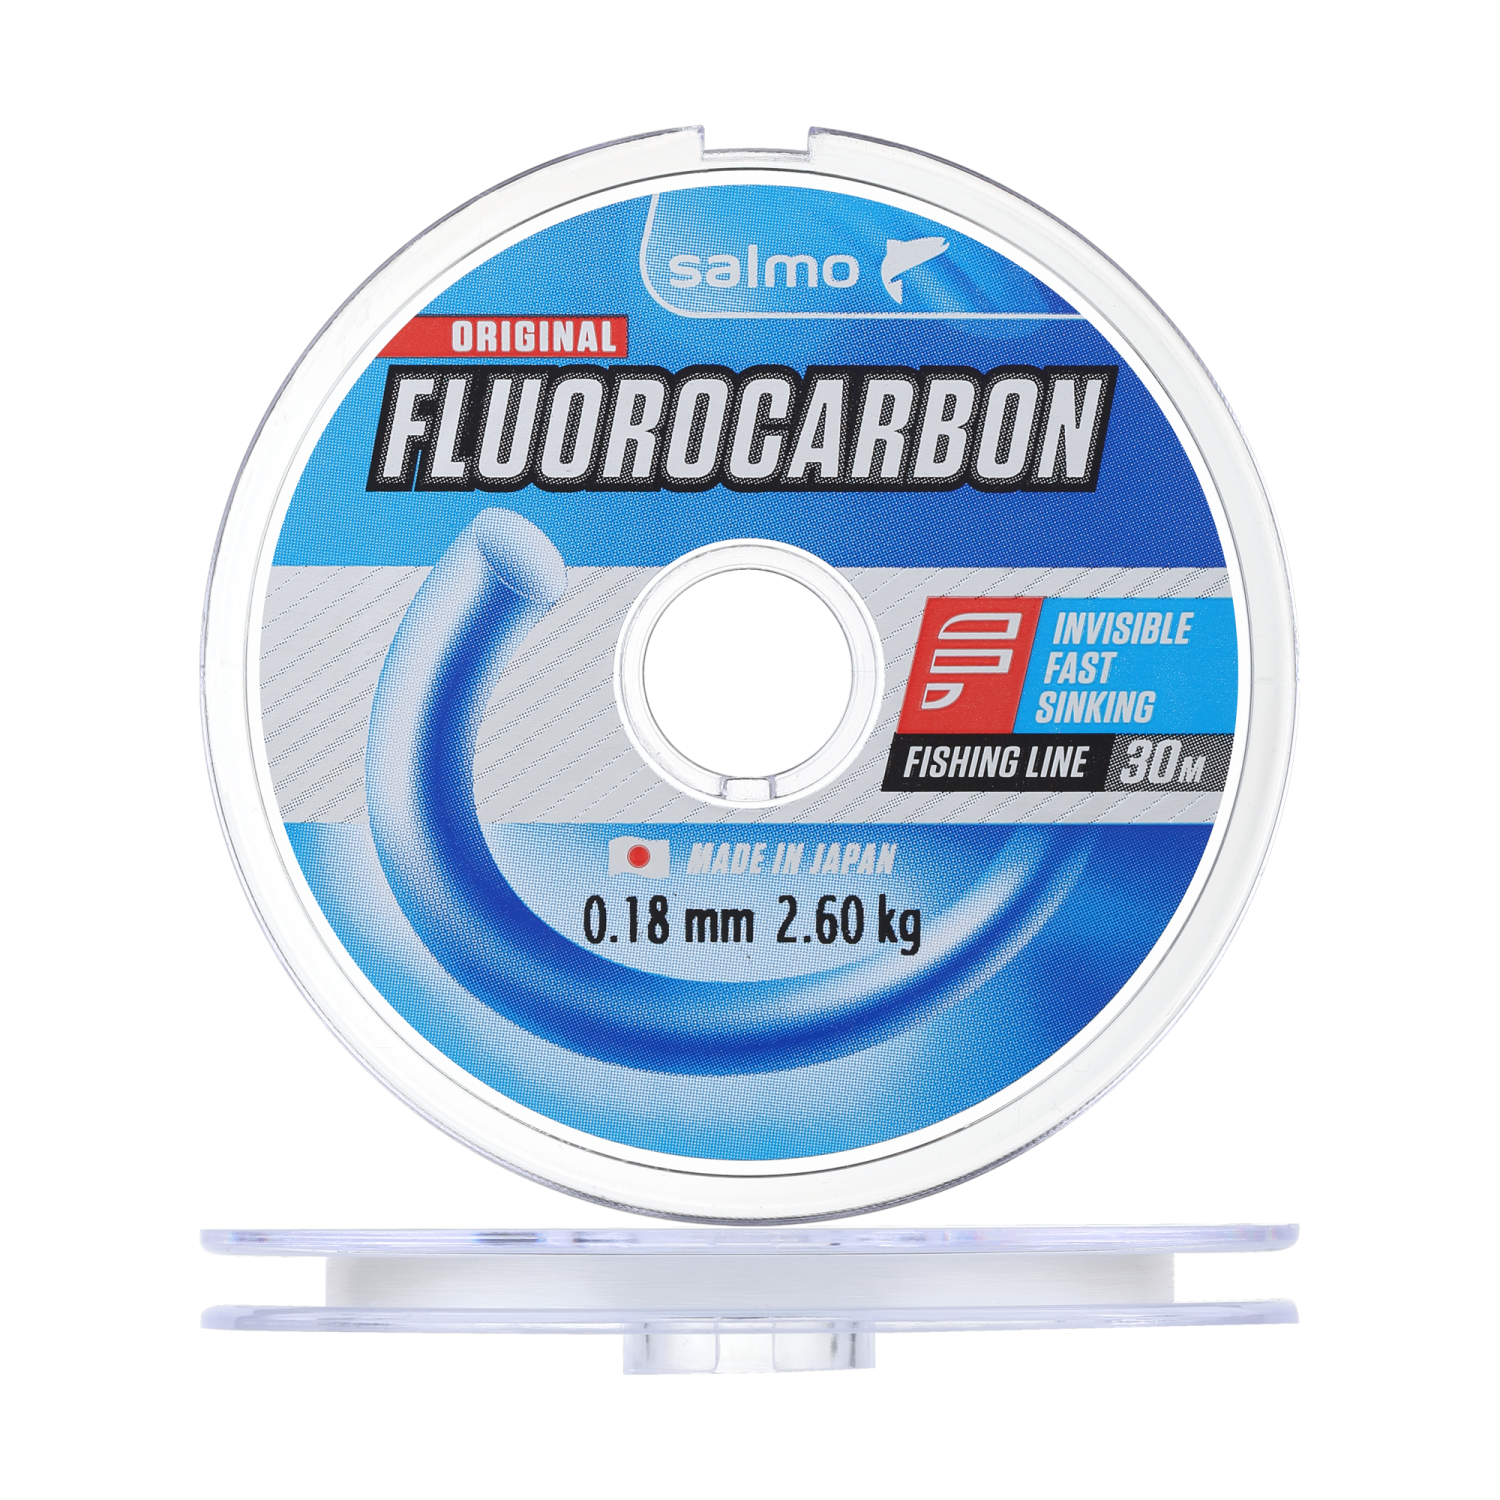 флюорокарбон team salmo ice soft fluorocarbon 2 0 235мм 30м clear Флюорокарбон Salmo Fluorocarbon 0,18мм 30м (clear)